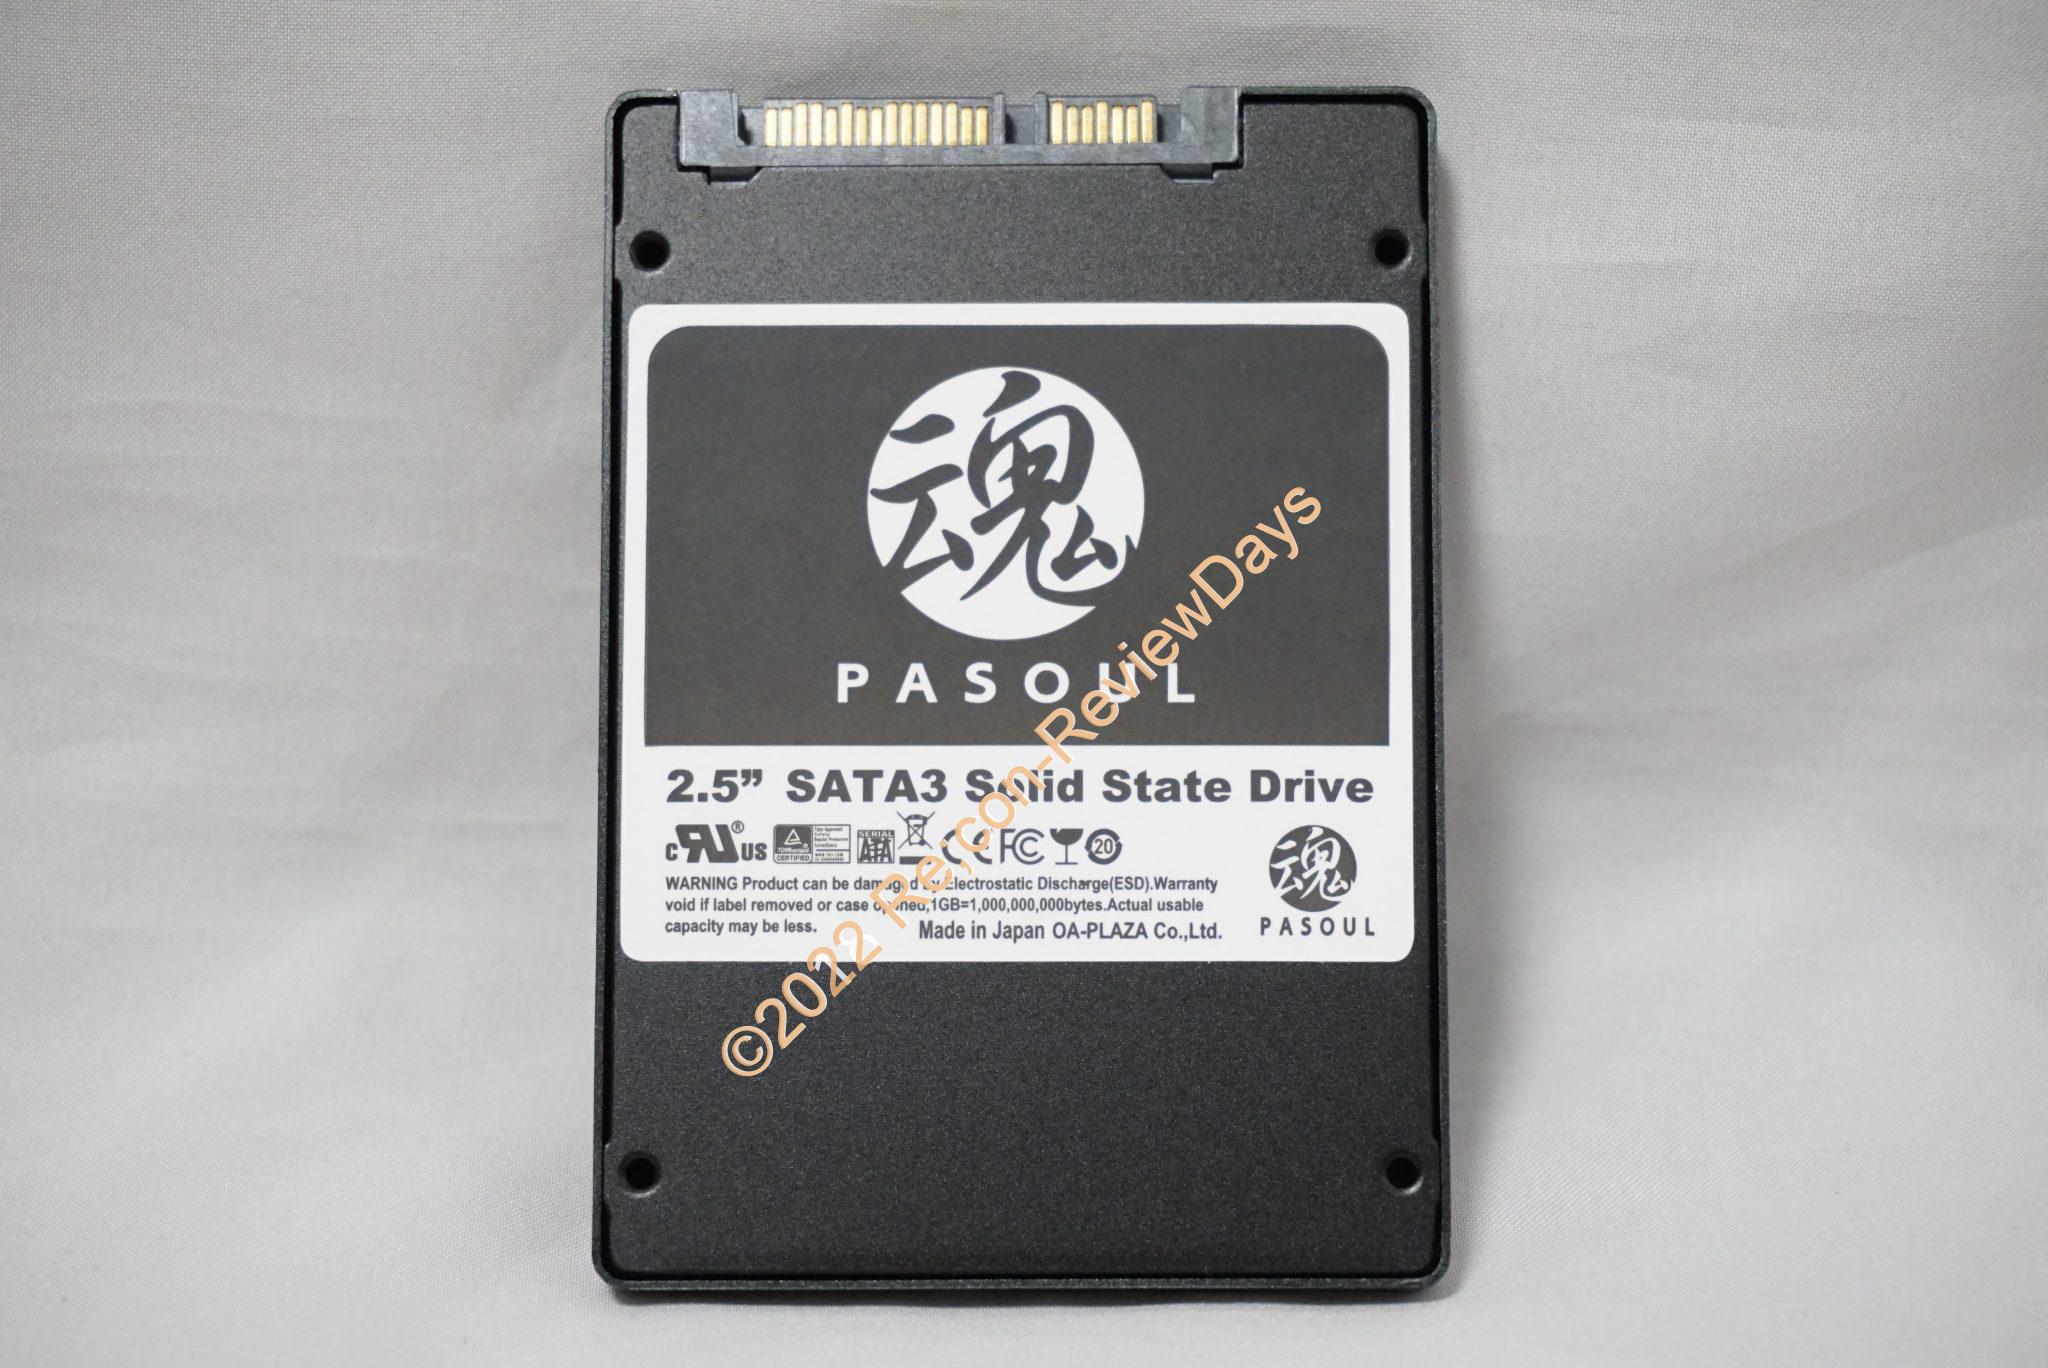 OA-PLAZA製の2.5インチ7mm厚のオリジナルブランド 480GB SSD「魂 PASOUL 480GB」のパフォーマンスをチェックする #SSD #自作PC